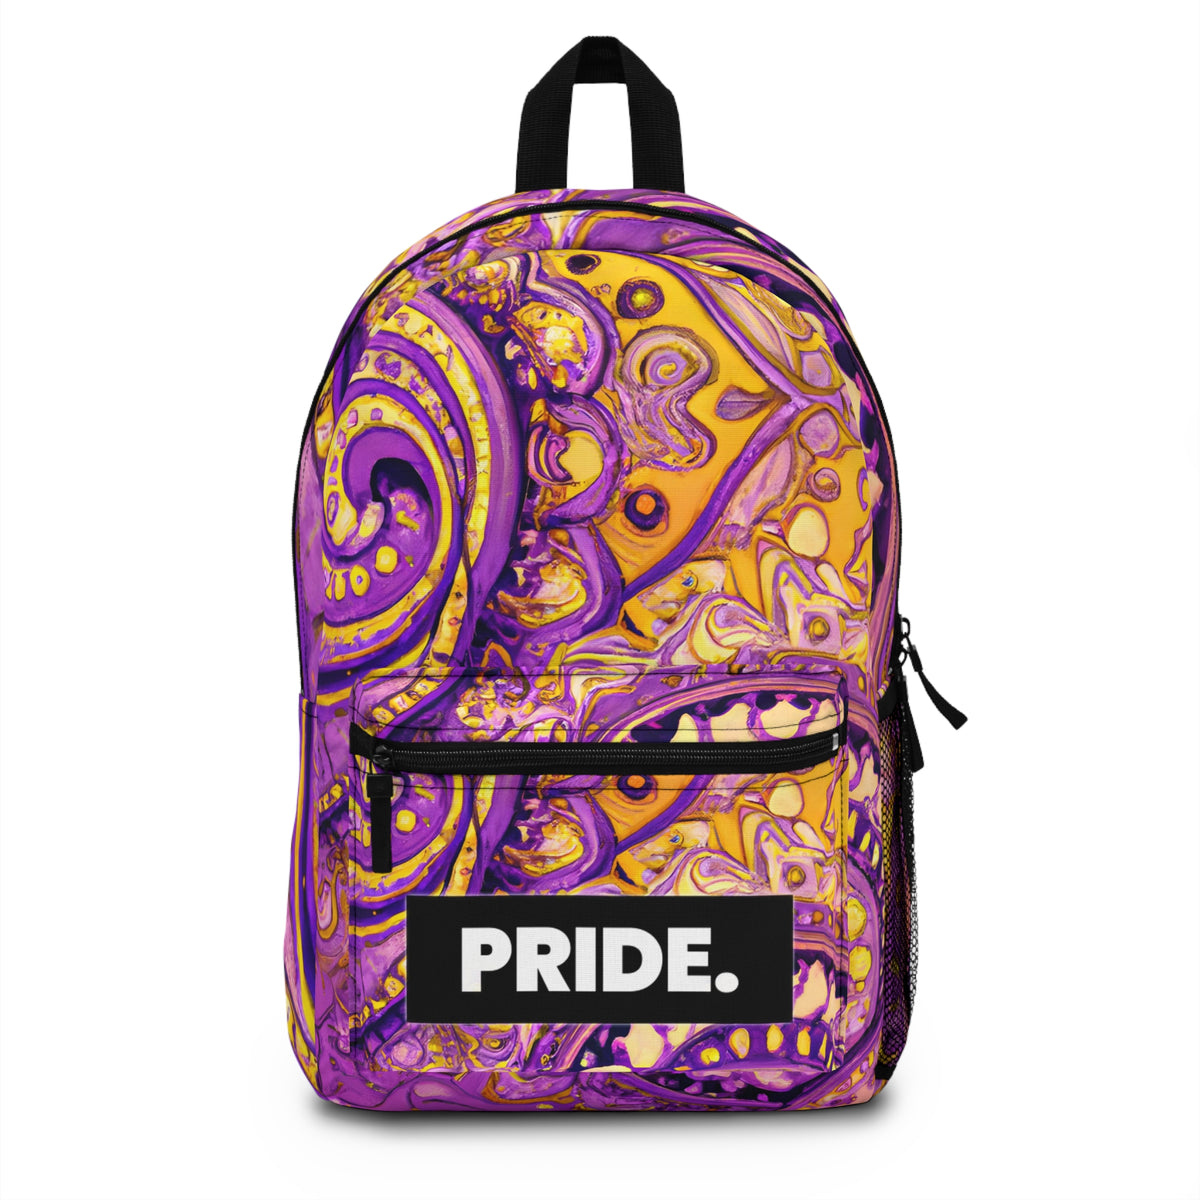 FlamingFolksy - Gay Pride Backpack